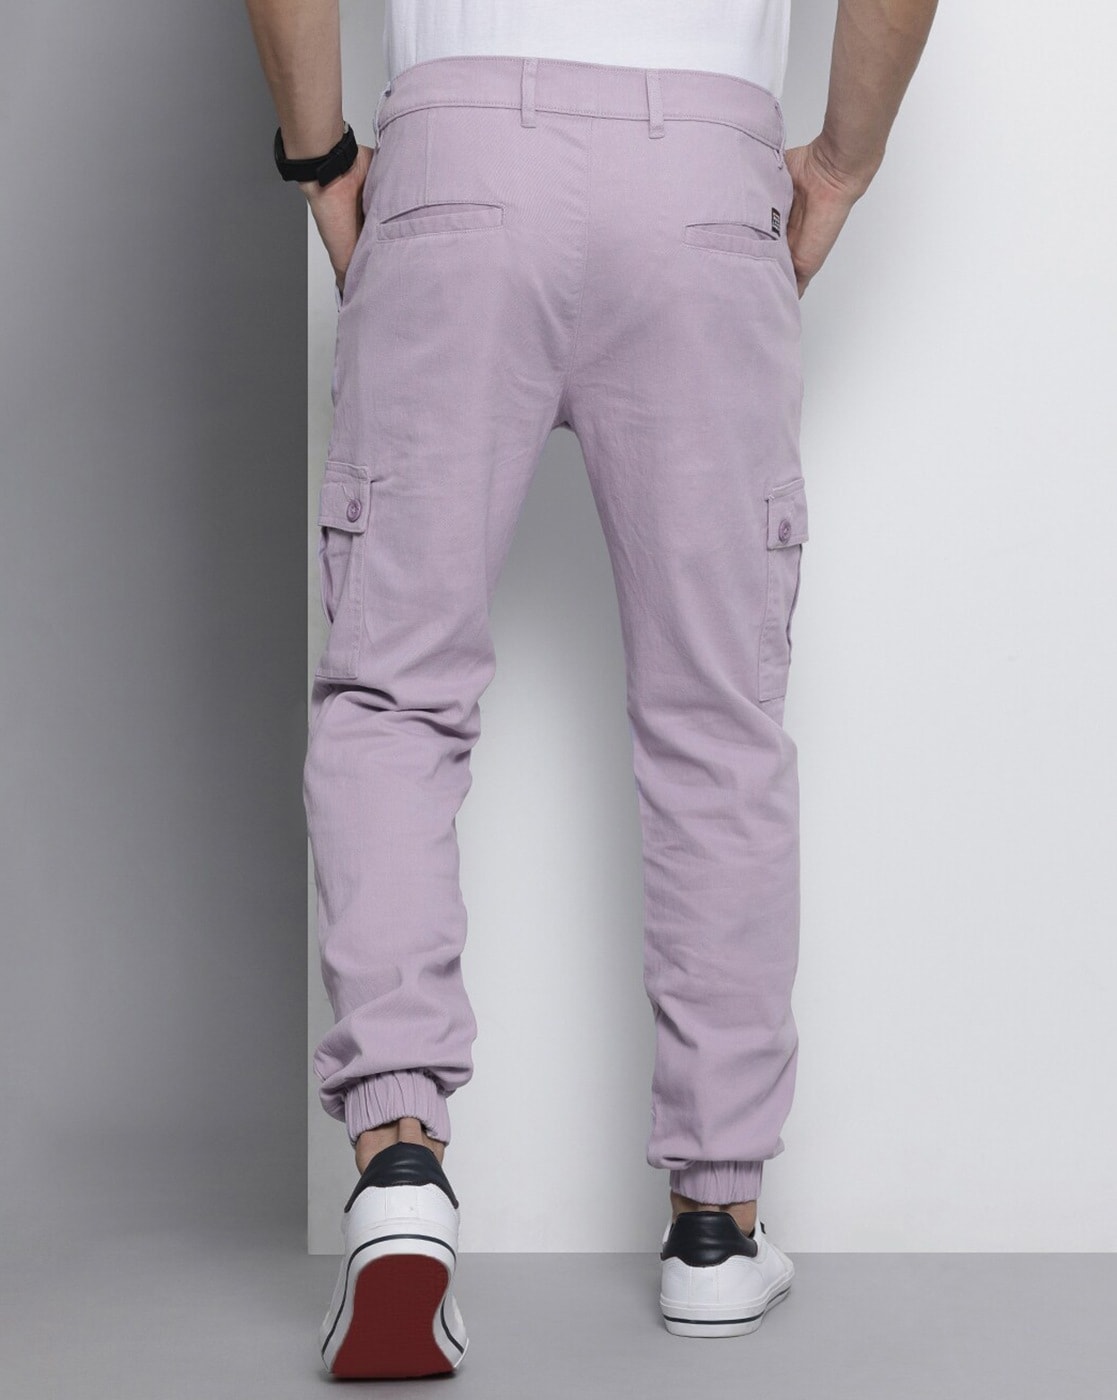 Cargo Pants  Cargo pants outfit Purple pants outfit Fashion pants